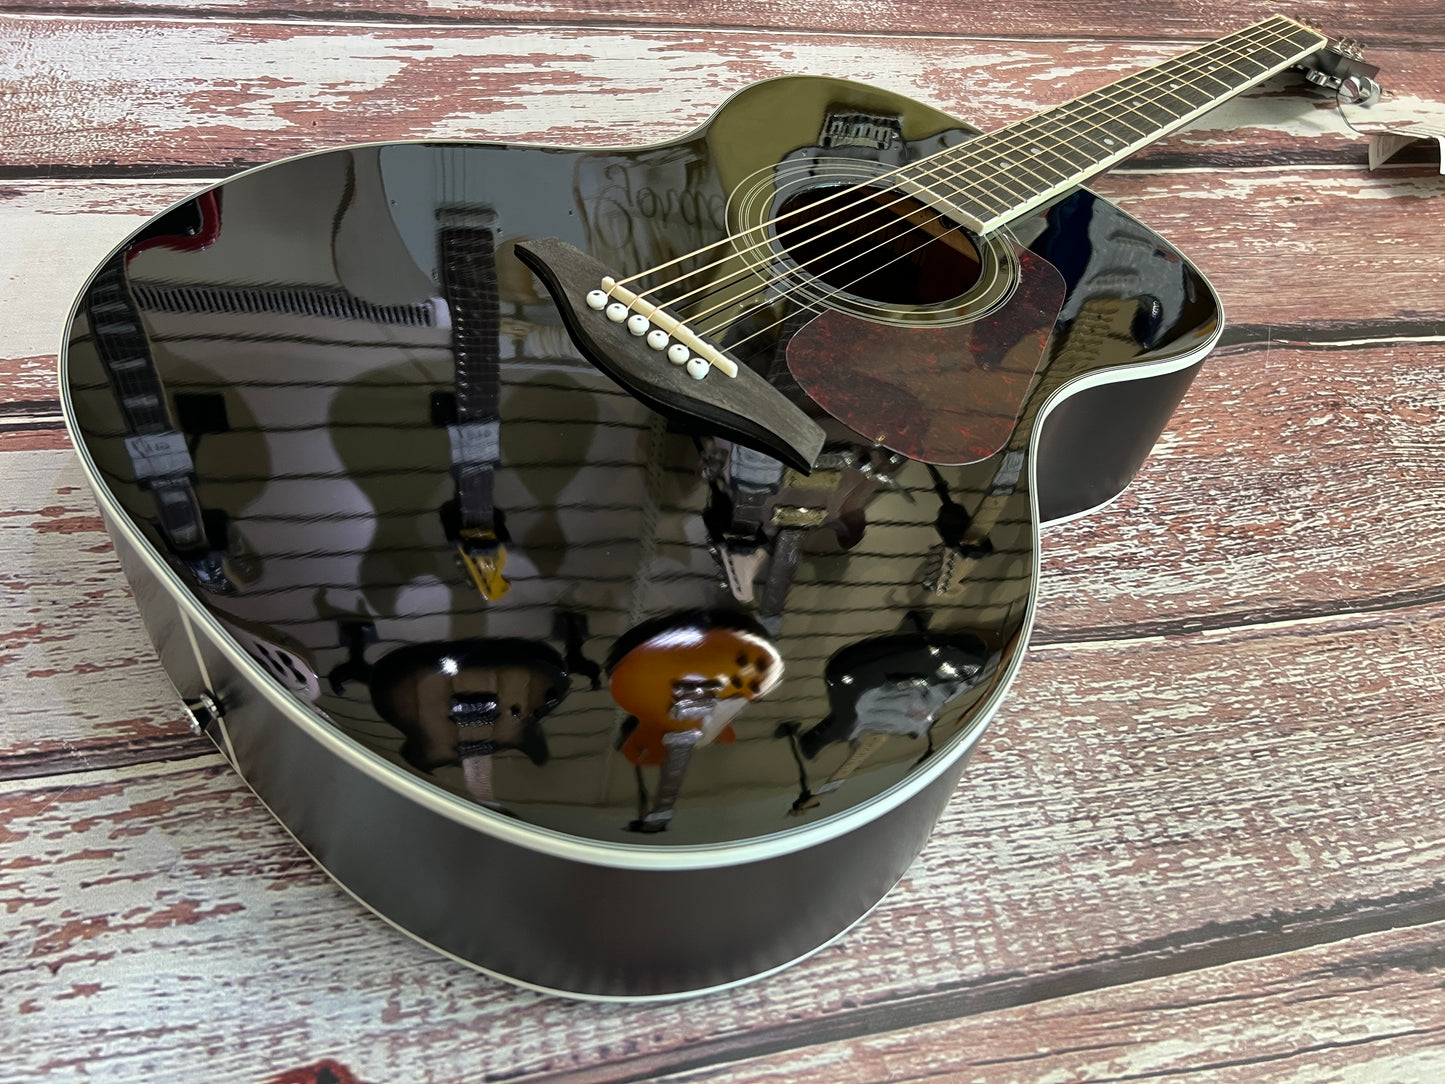 Vintage V300 Acoustic Guitar Black